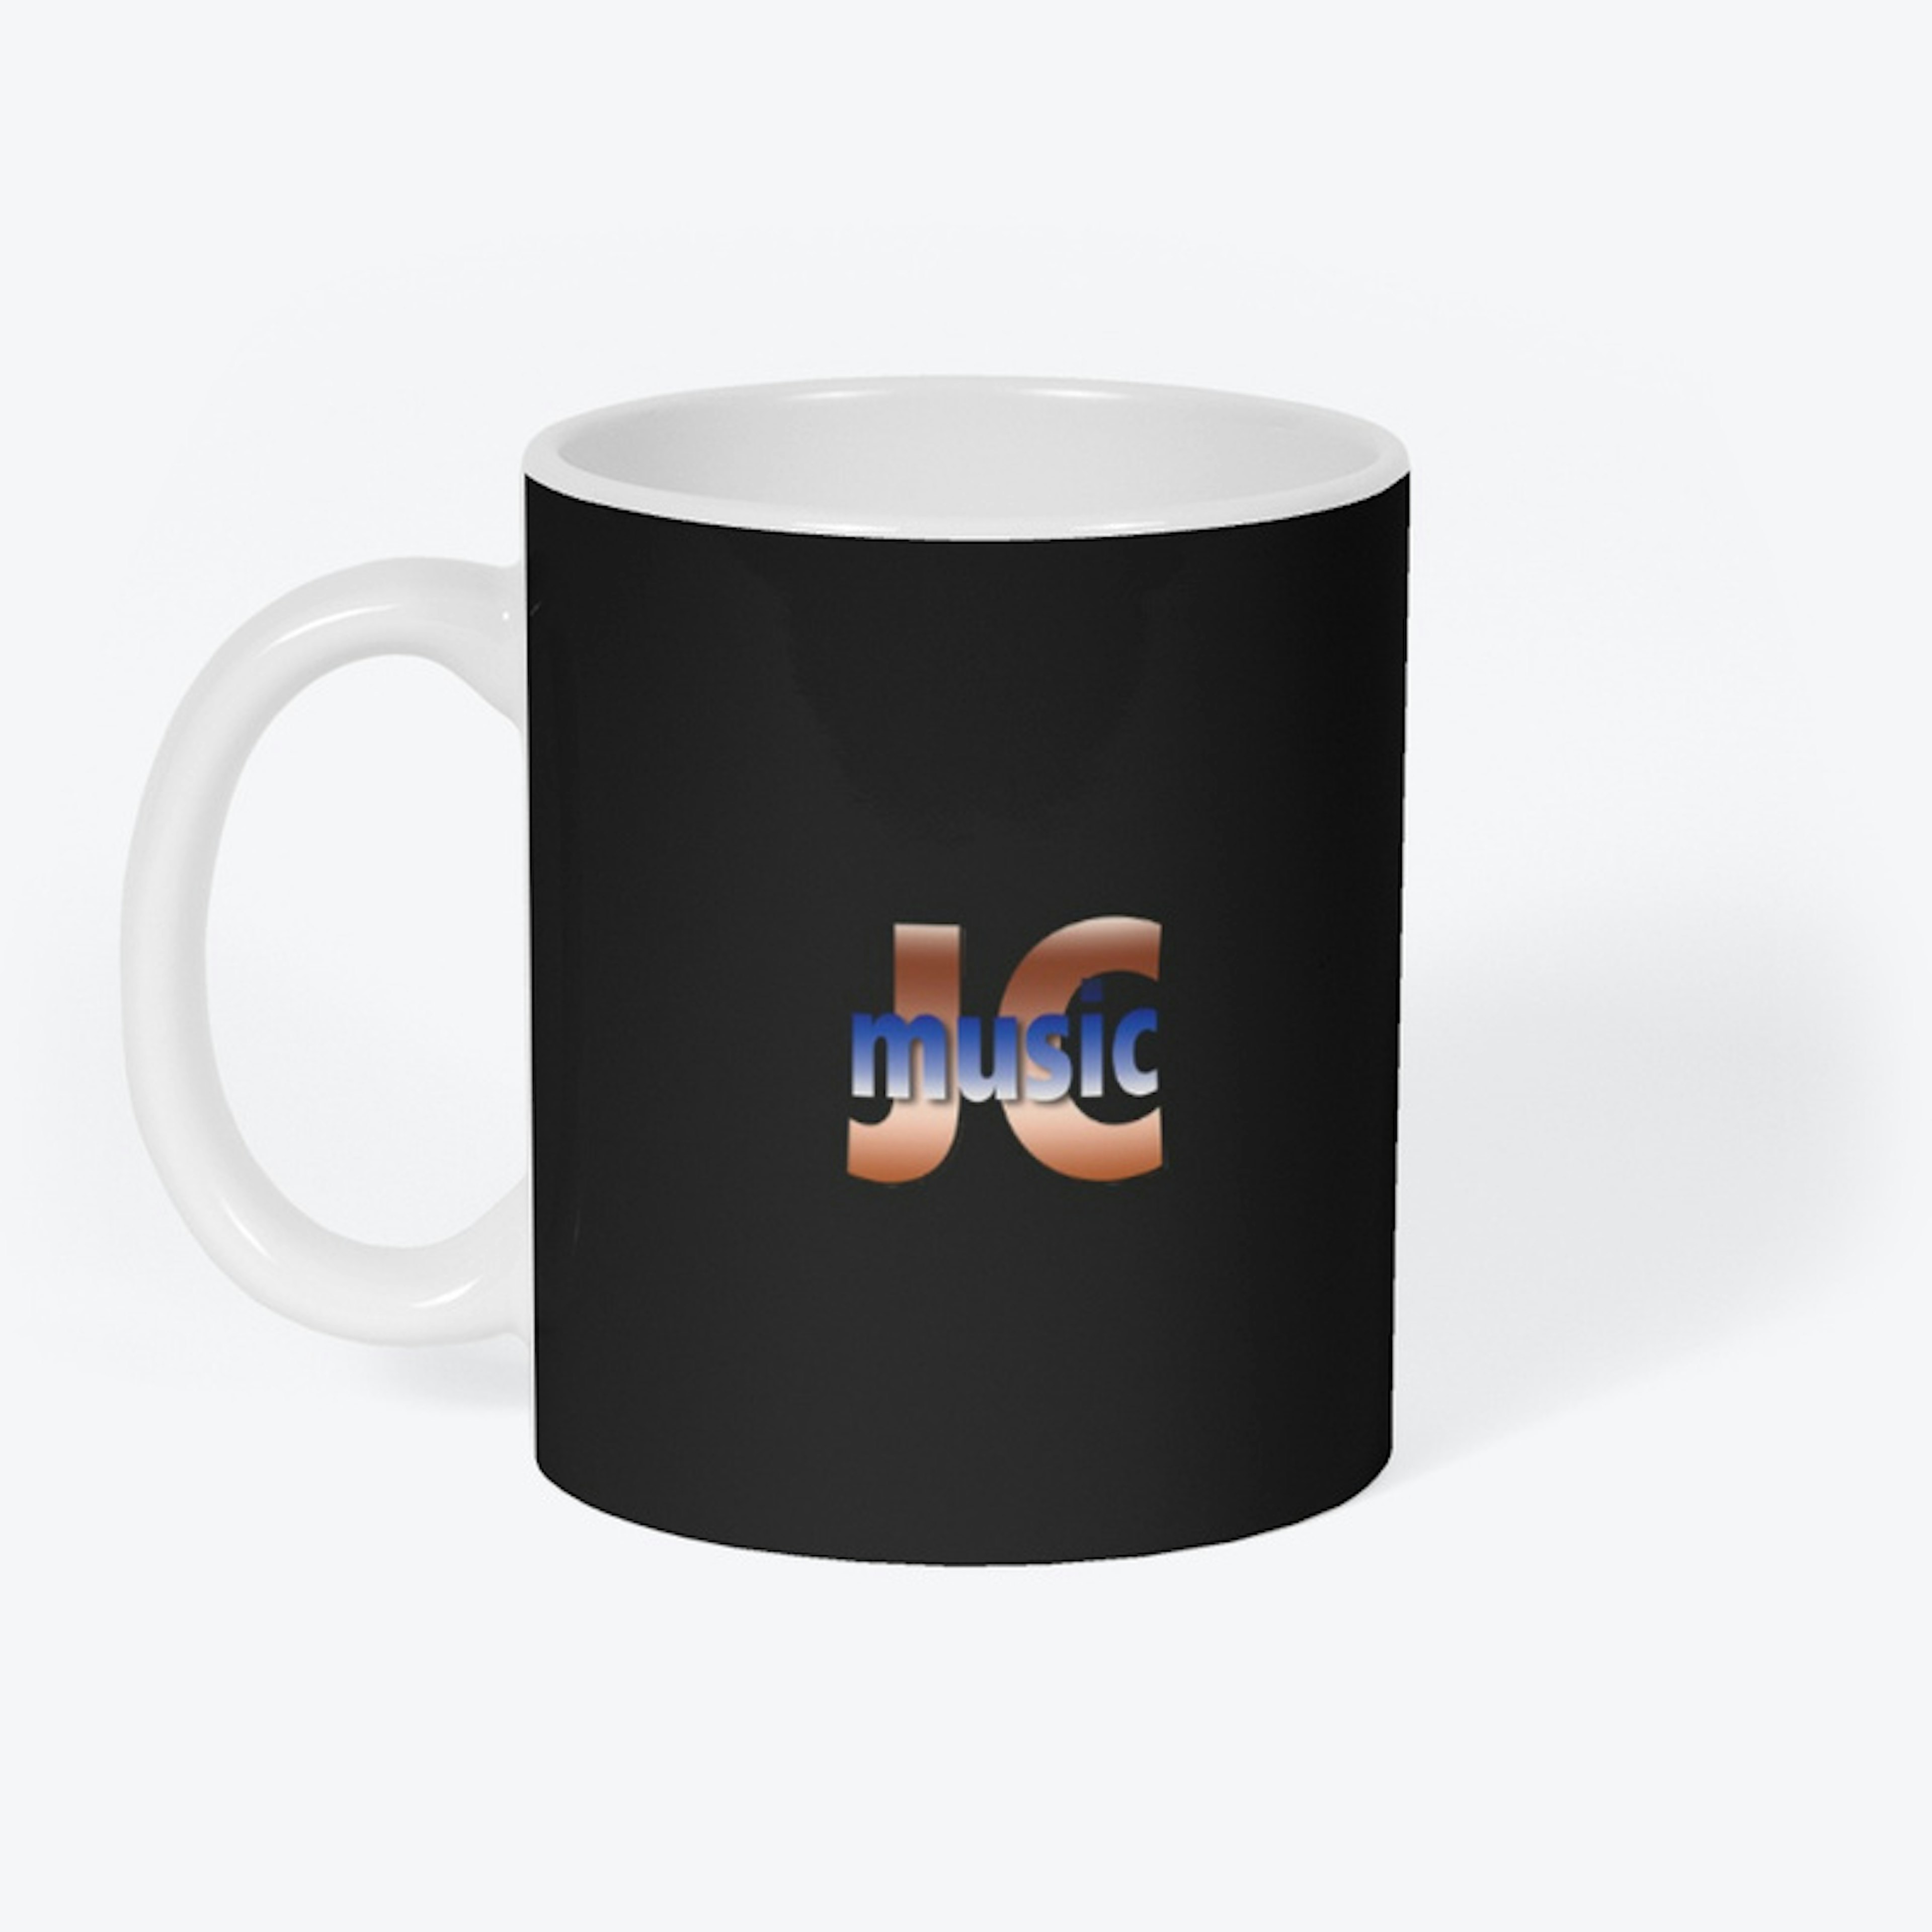 JCmusic mug